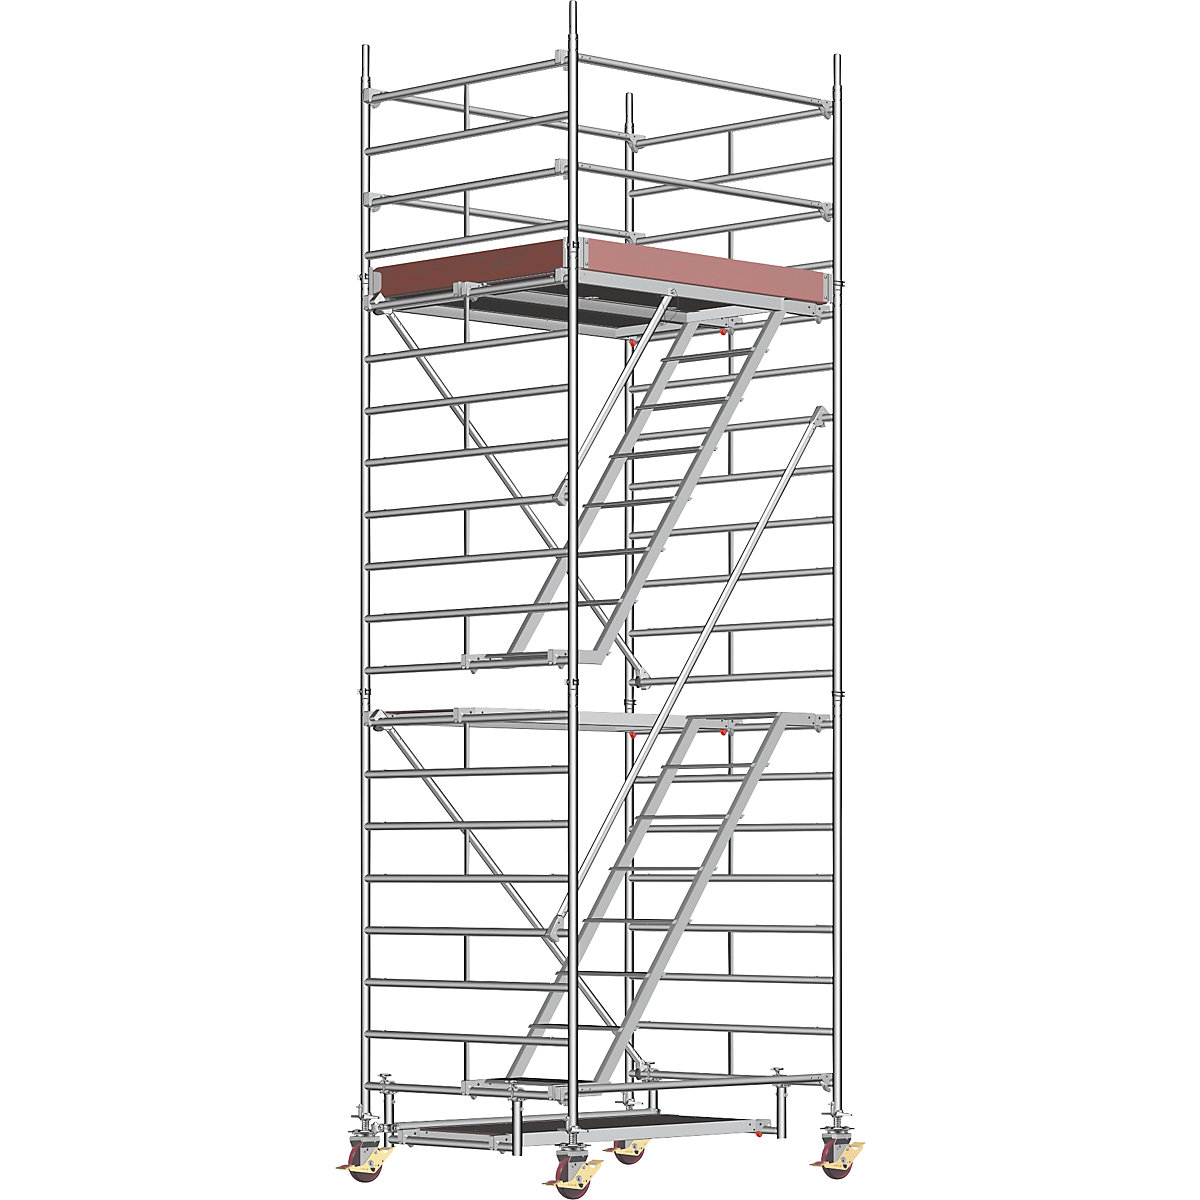 Andamio rodante universal – Layher, con escalera, plataforma de 1,80 x 1,50 m, altura de andamio 5,43 m-6